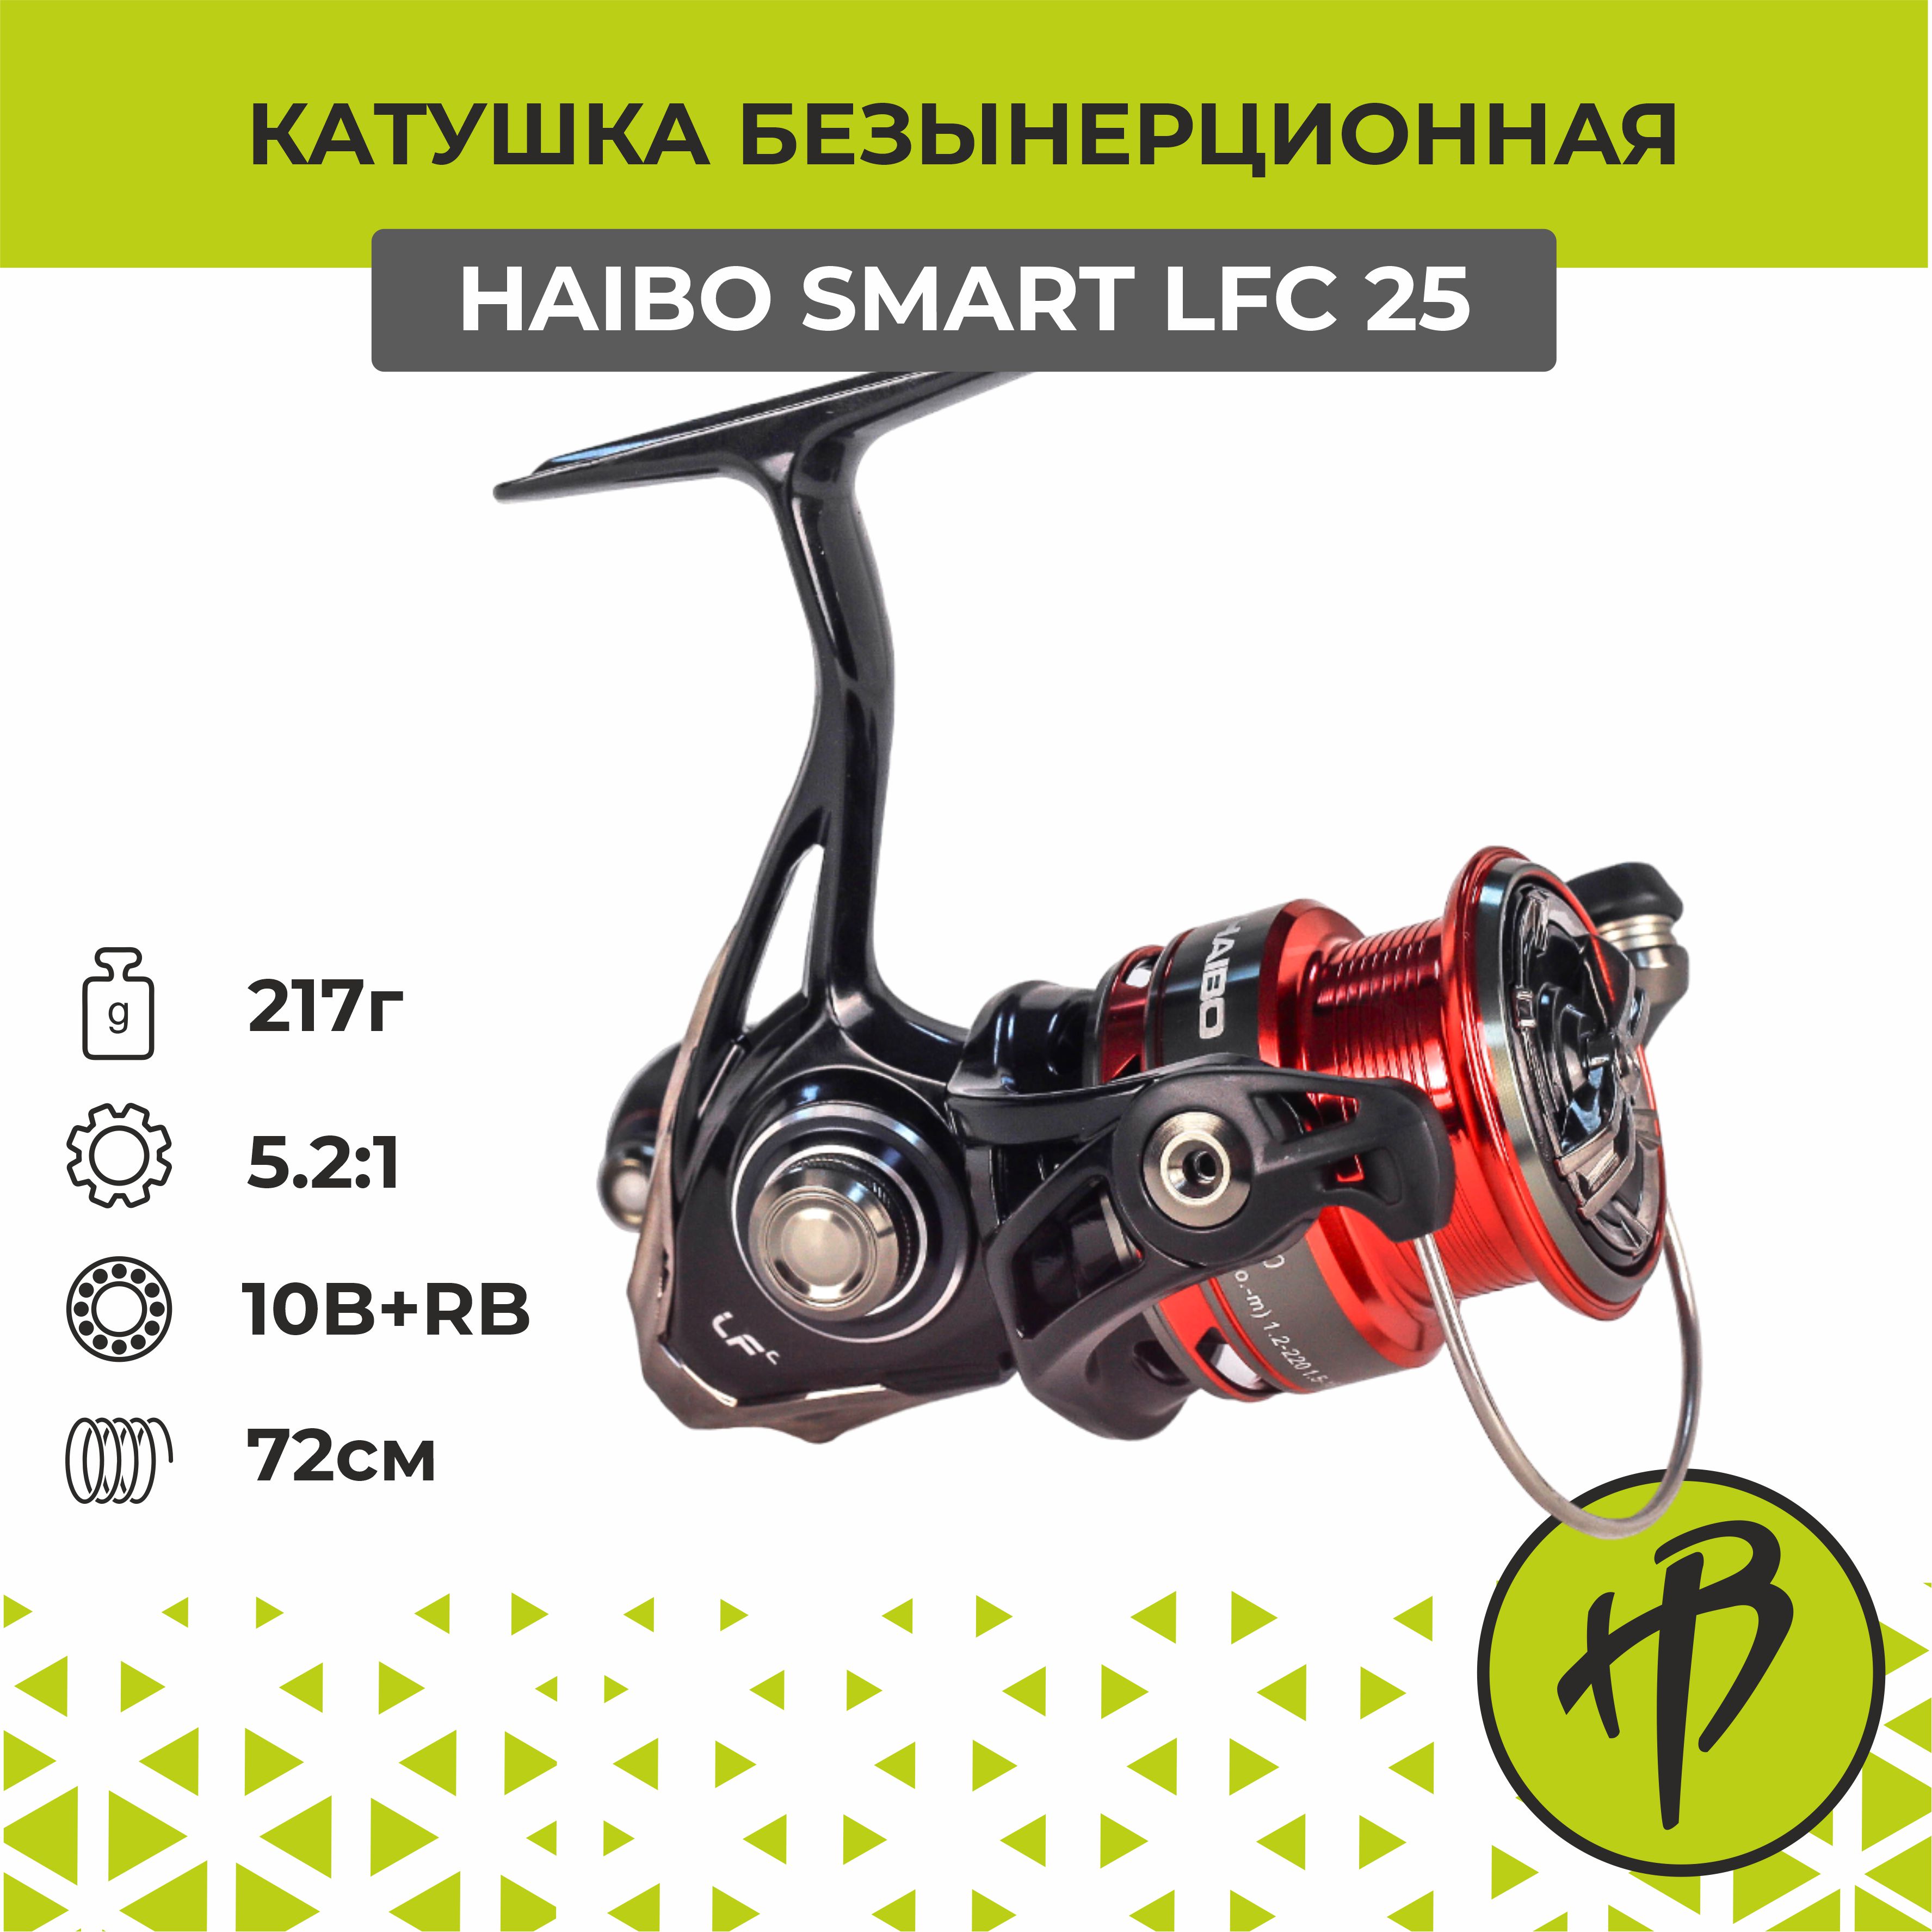 Катушка для спиннинга безынерционная Haibo Smart LFC 25, правая/левая рука